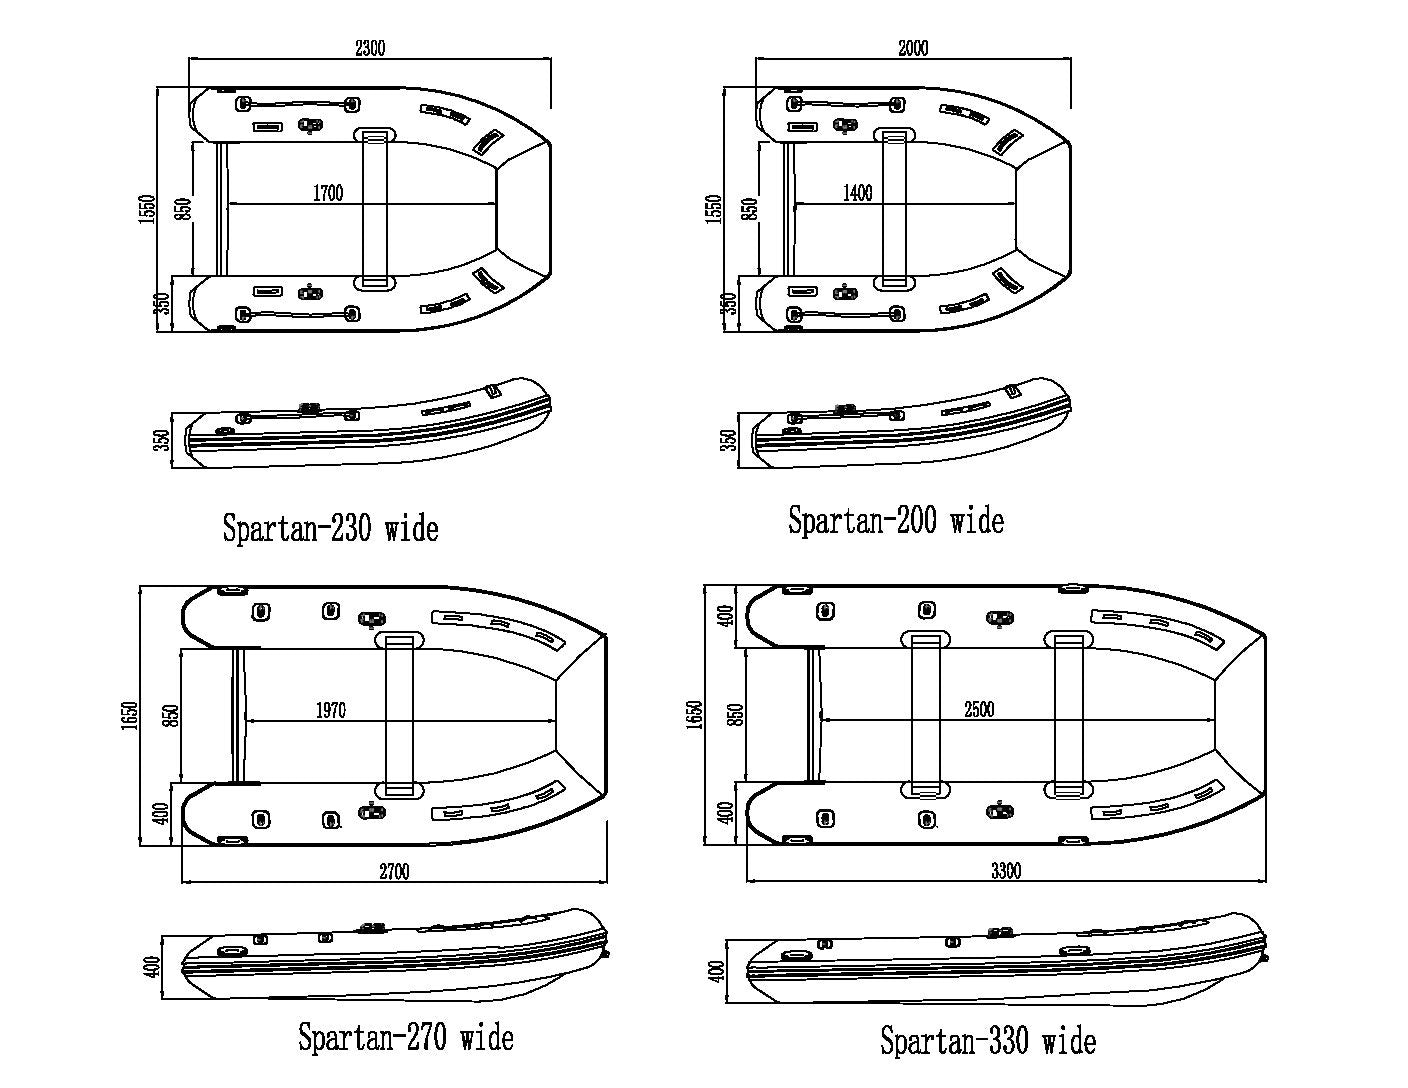 Spartan 330 Wide - Spartan Boats - spartan wide - Spartan Boats -